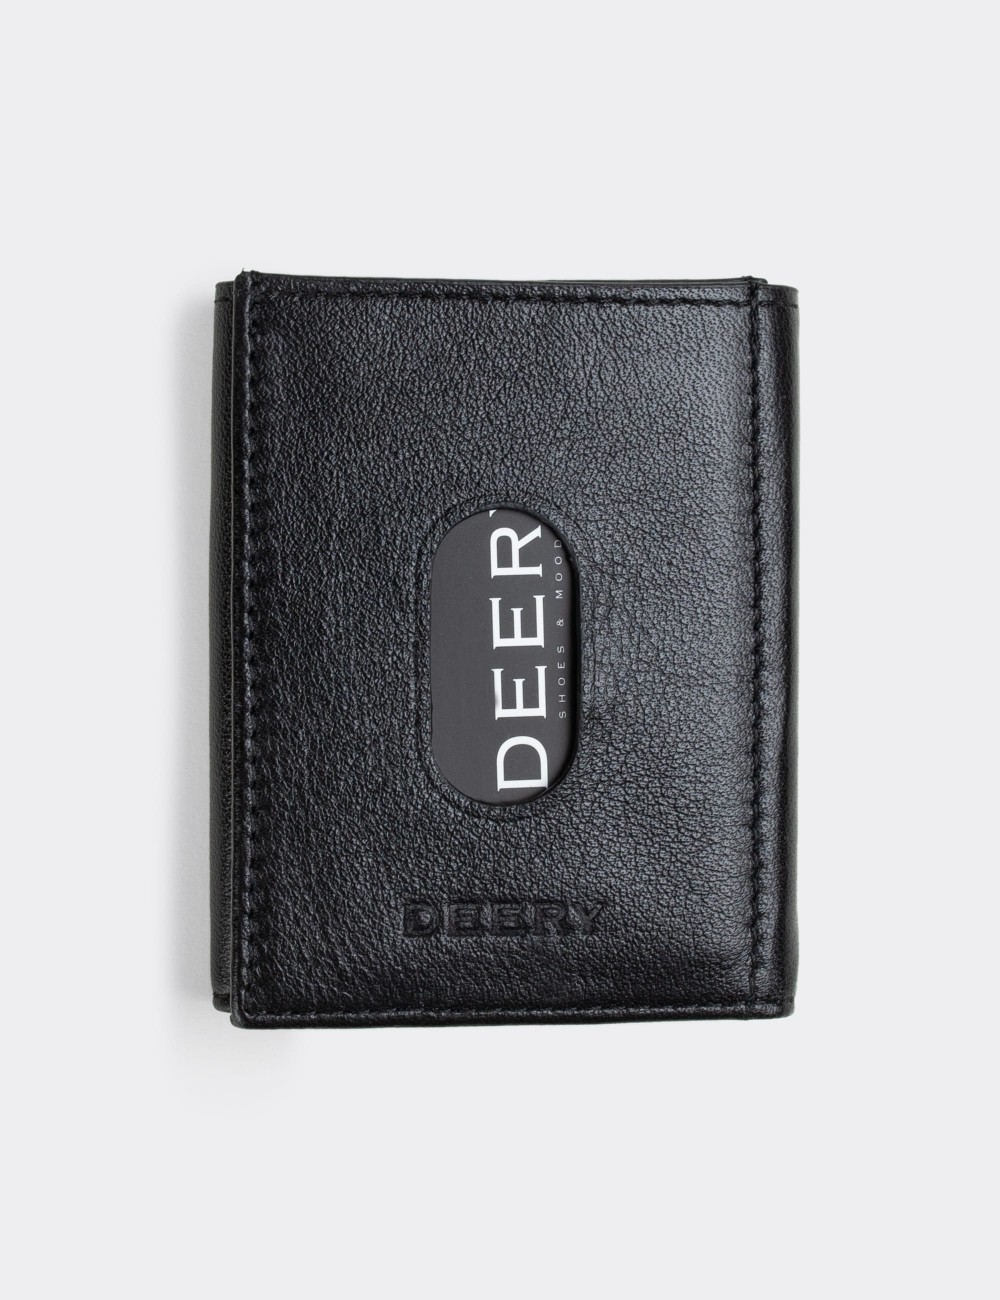  Leather Black Men's Wallet - 00224MSYHZ01